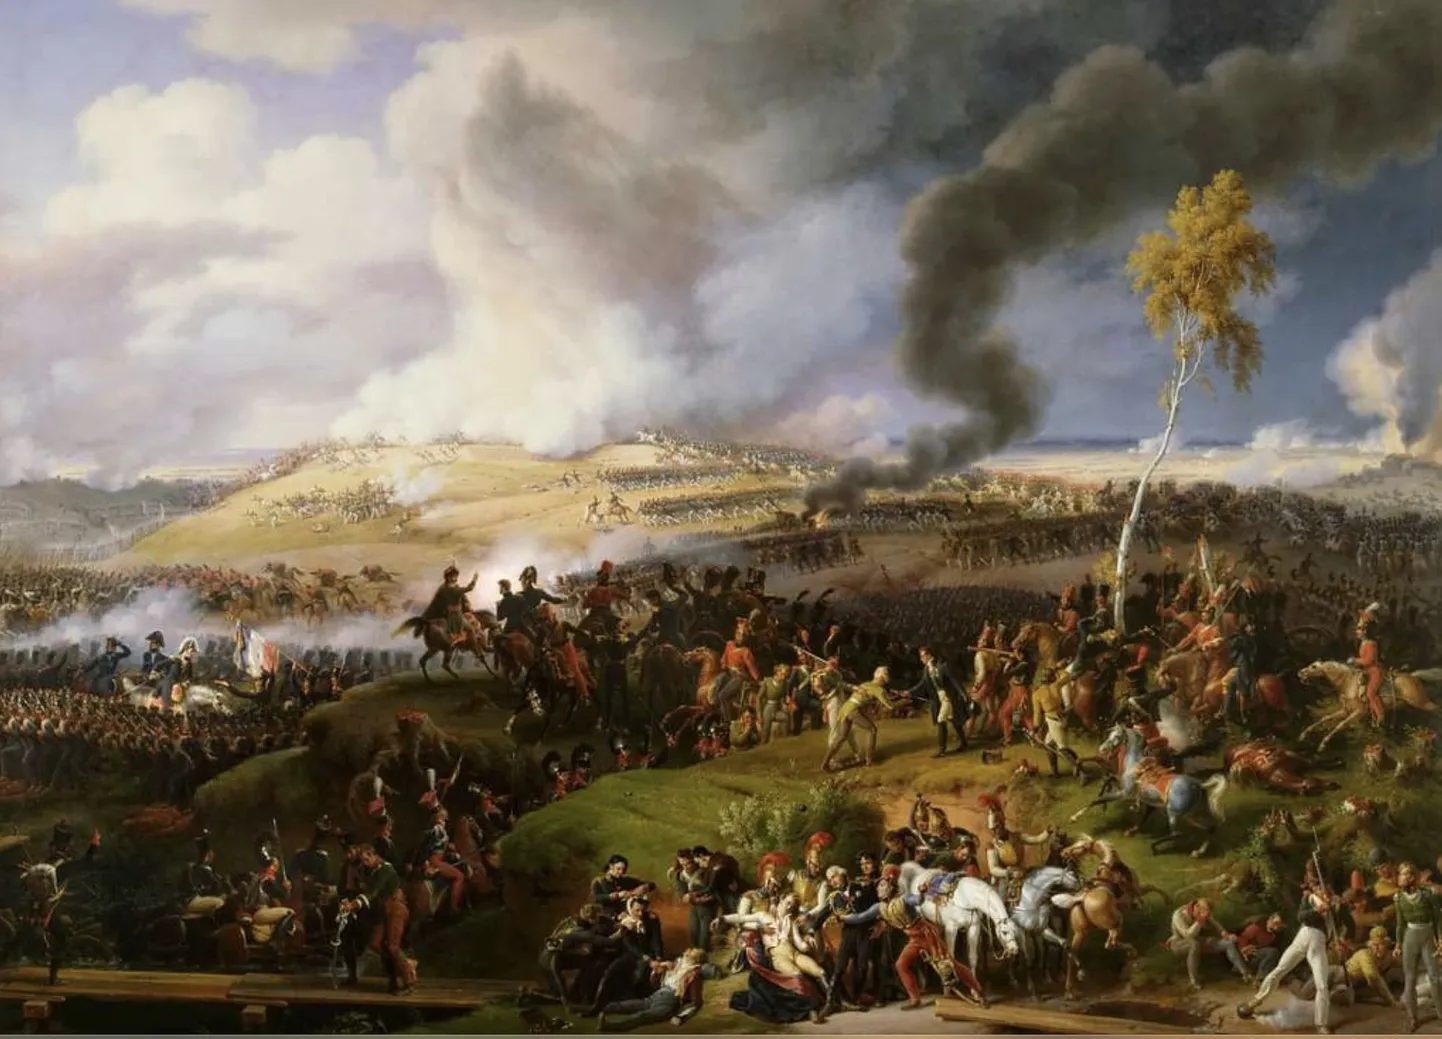 Borodino lahing, nagu seda 7. septembril 1812 Moskva all toimunud lahingut 10 aastat hiljem kujutas maalikuntsnik Louis-François Lejeune. Ilmselt on lahingutest ja verevalamistest kogu inimkonna ajaloo vältel tehtud arvukamalt kunstiteoseid kui koostööst ja kokkulepetest.